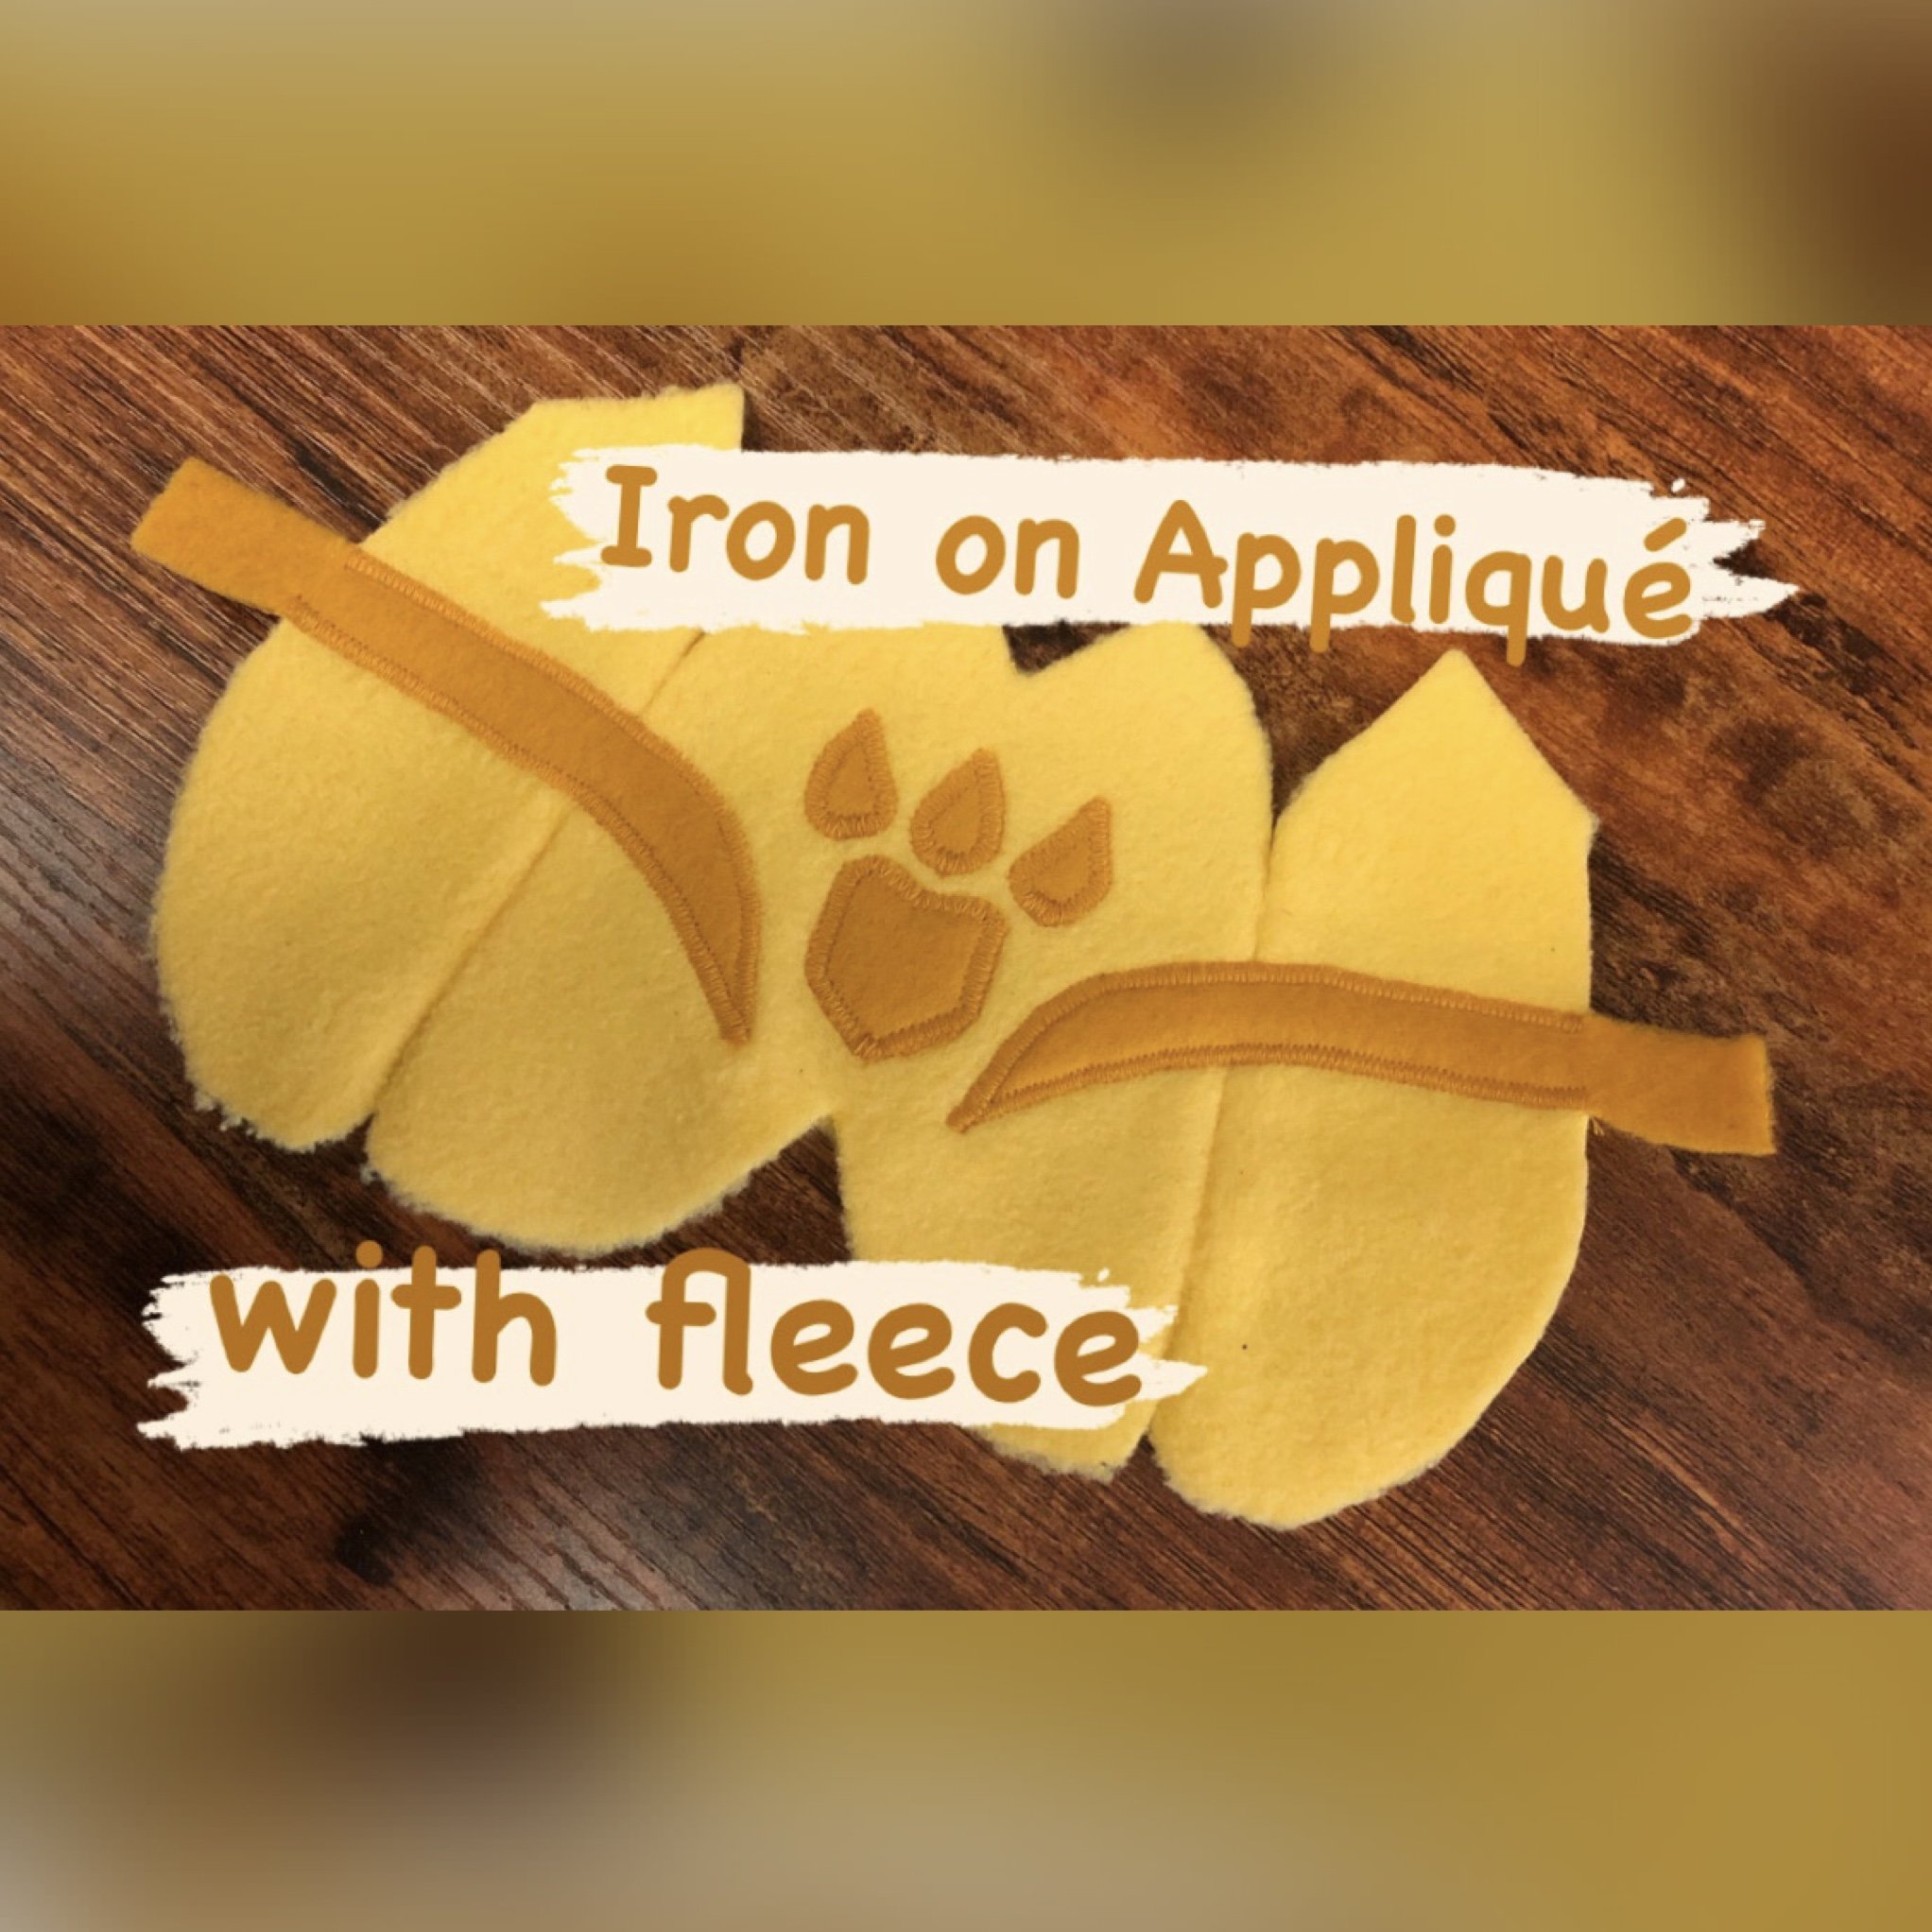 Iron on Appliqué with fleece